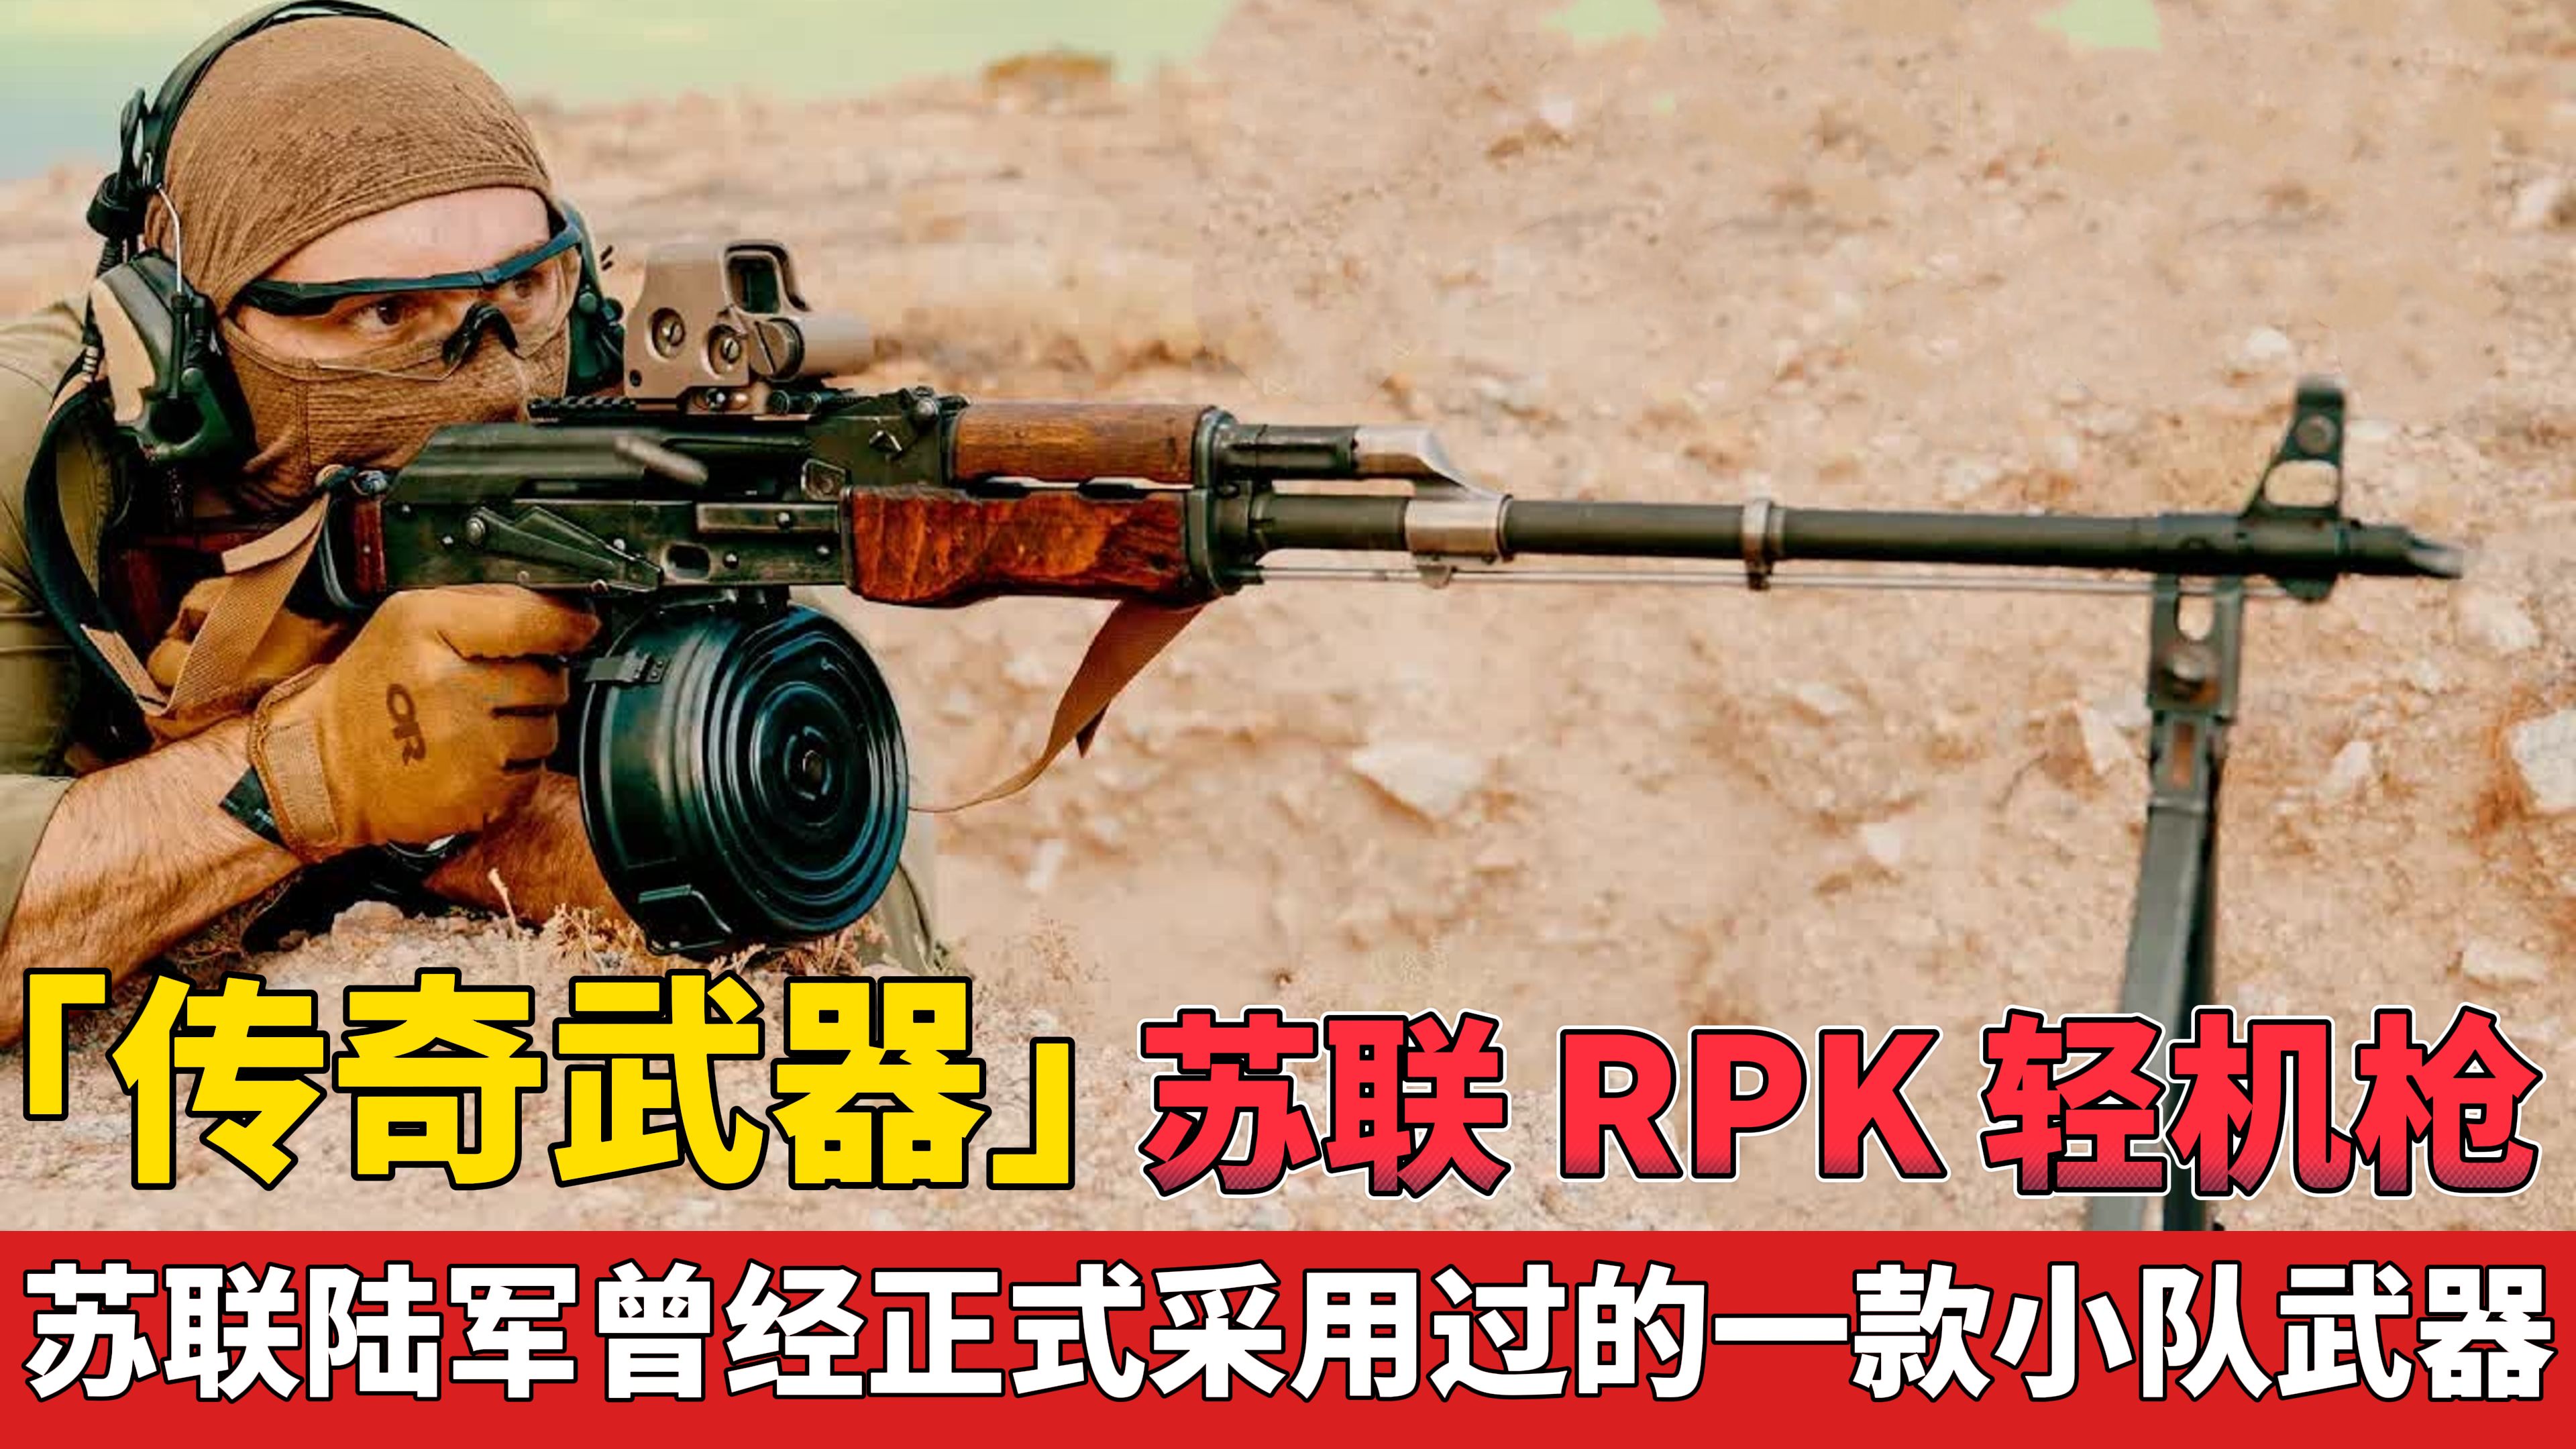 「传奇武器」苏联 RPK 轻机枪 曾经被正式采用过的小队武器